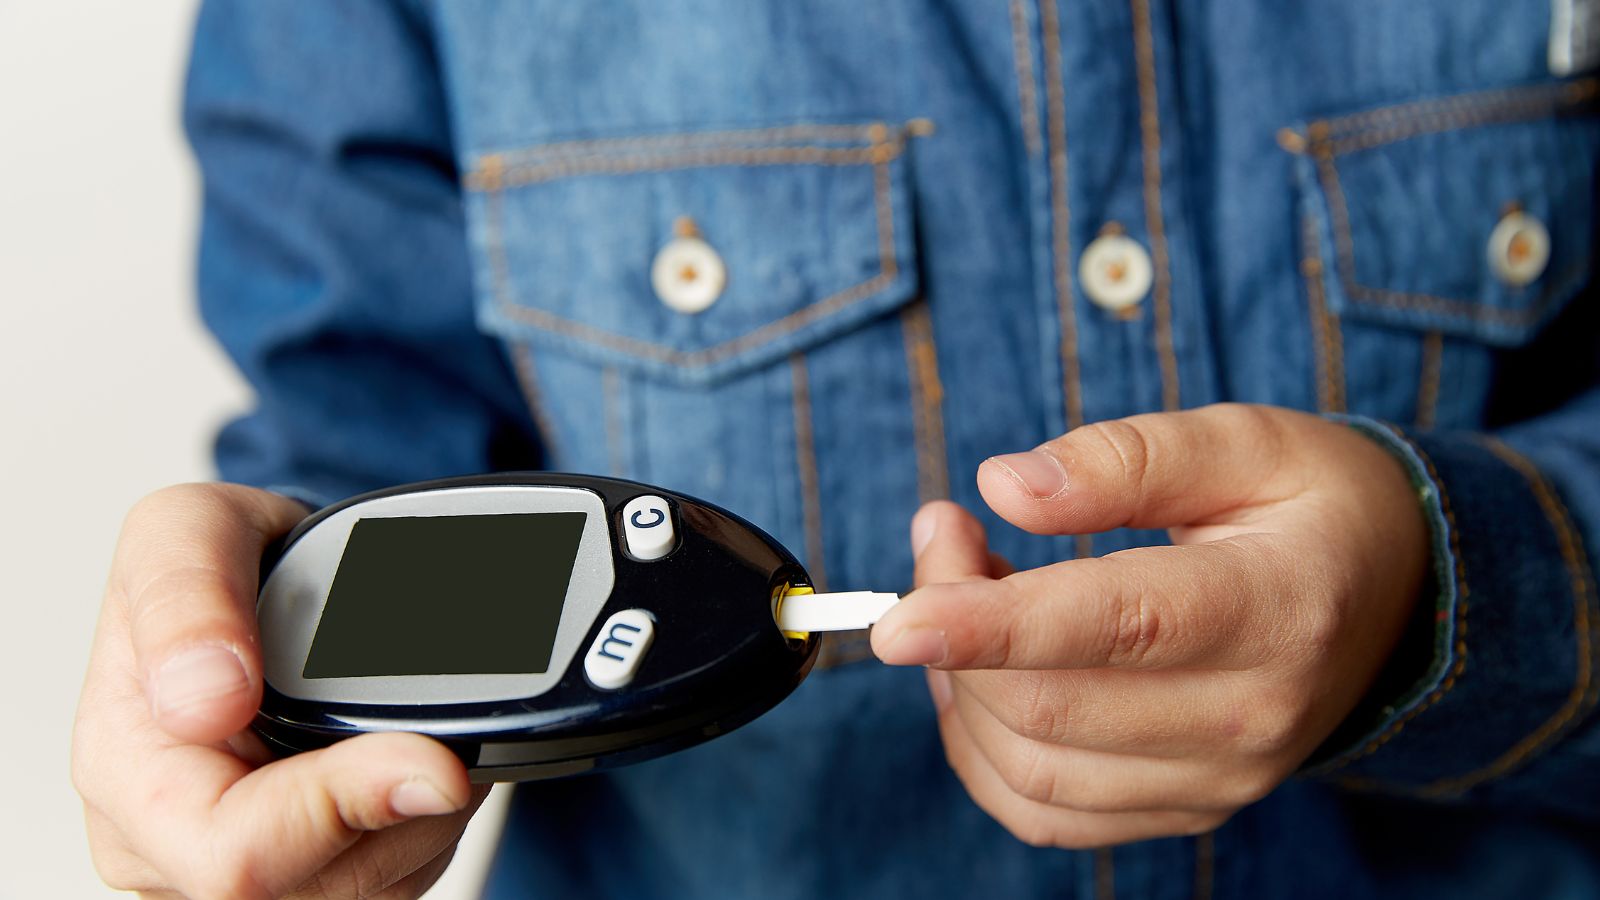 FDA approva un nuovo sistema per monitoraggio glicemico 